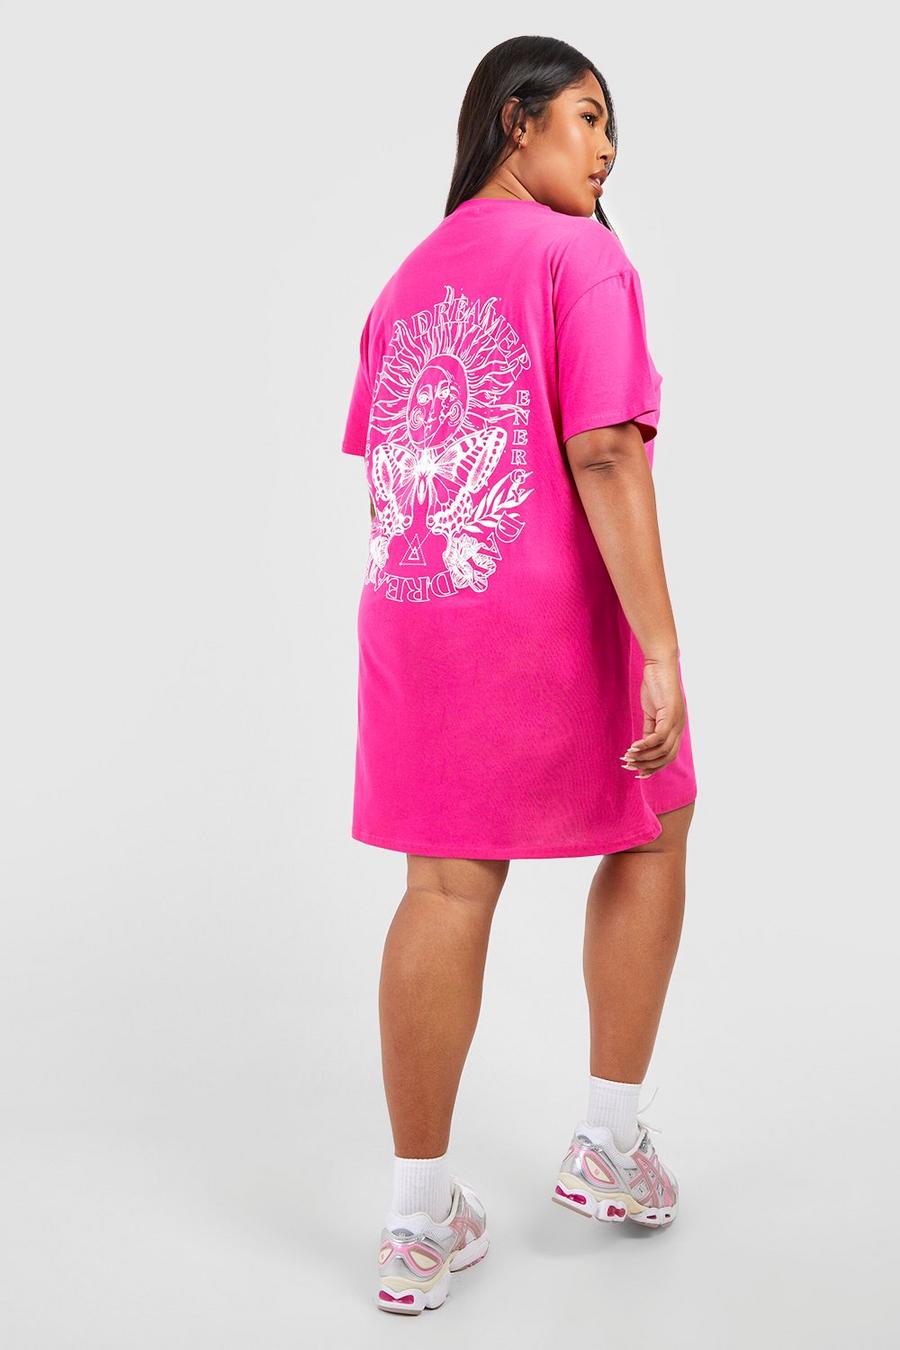 Vestito T-shirt Plus Size con grafica di astrologia, Hot pink rosa